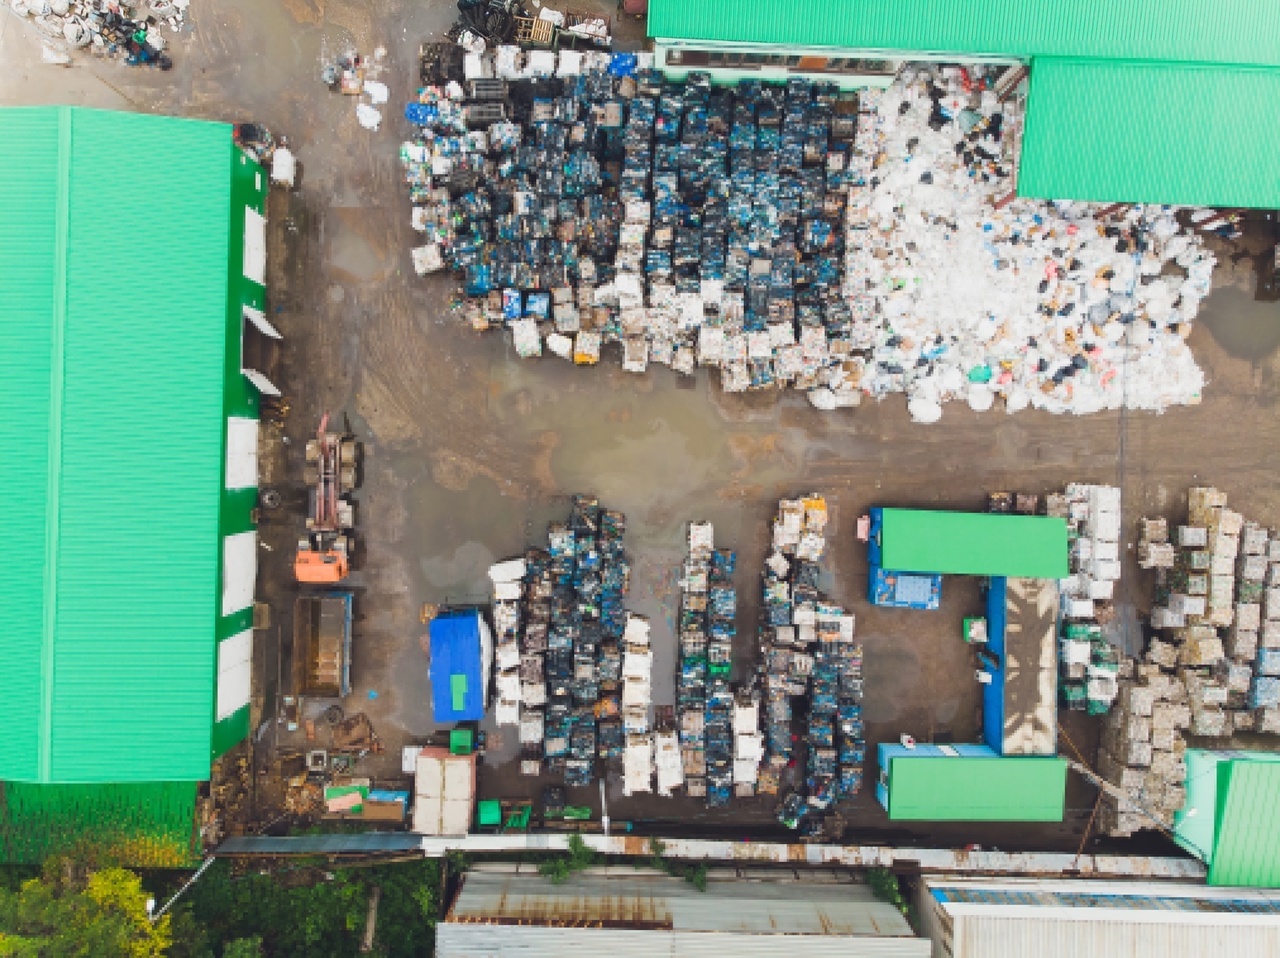 Руководитель отдела развития РО «Эко-сити» рассказала о сортировке мусора в Стерлитамаке